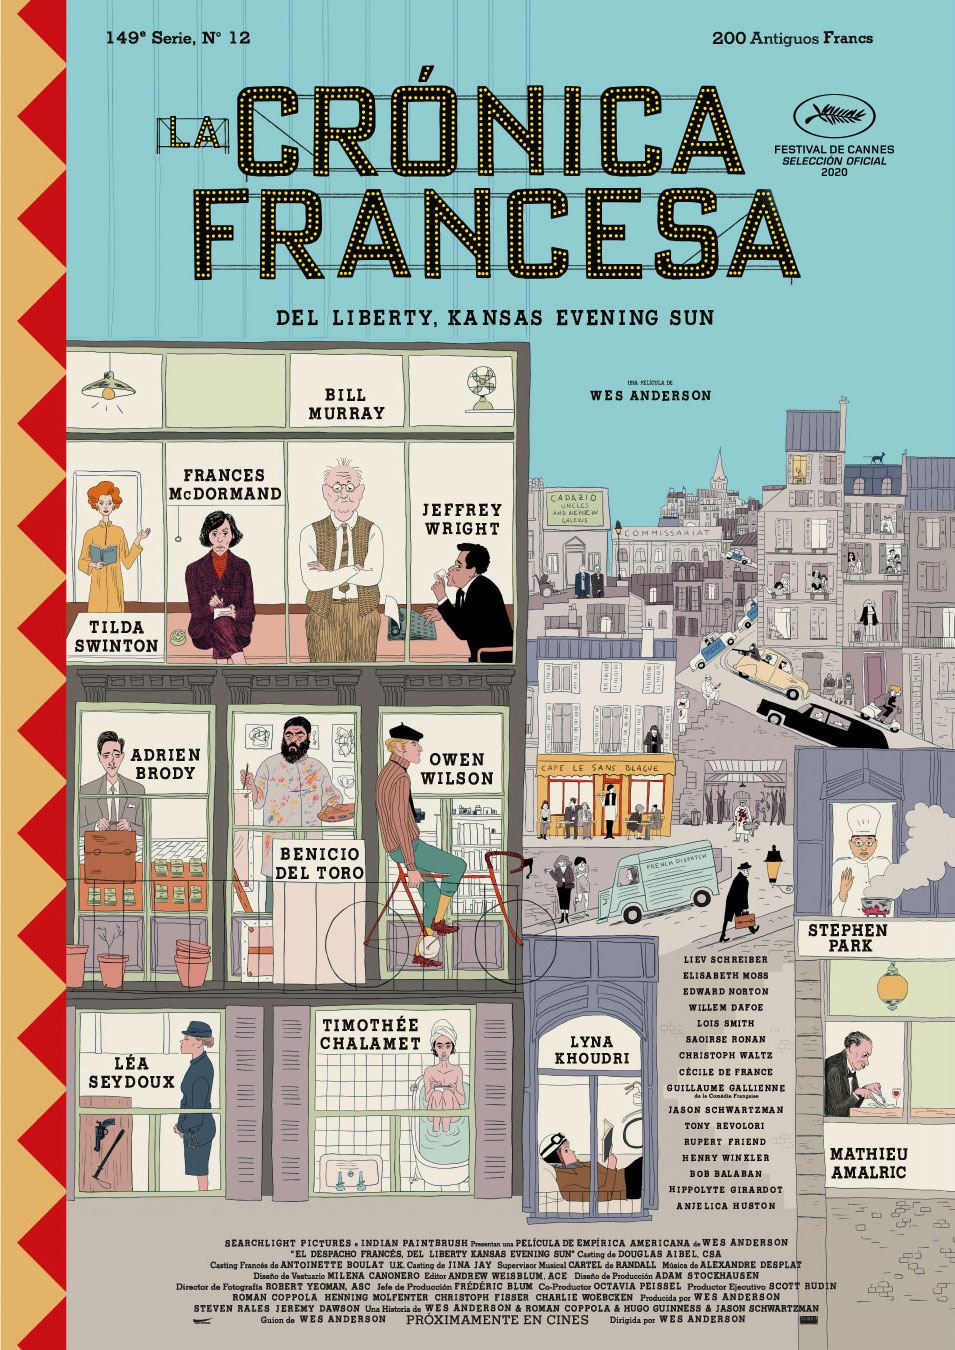 Se presenta trailer y poster de La Cronica Francesa